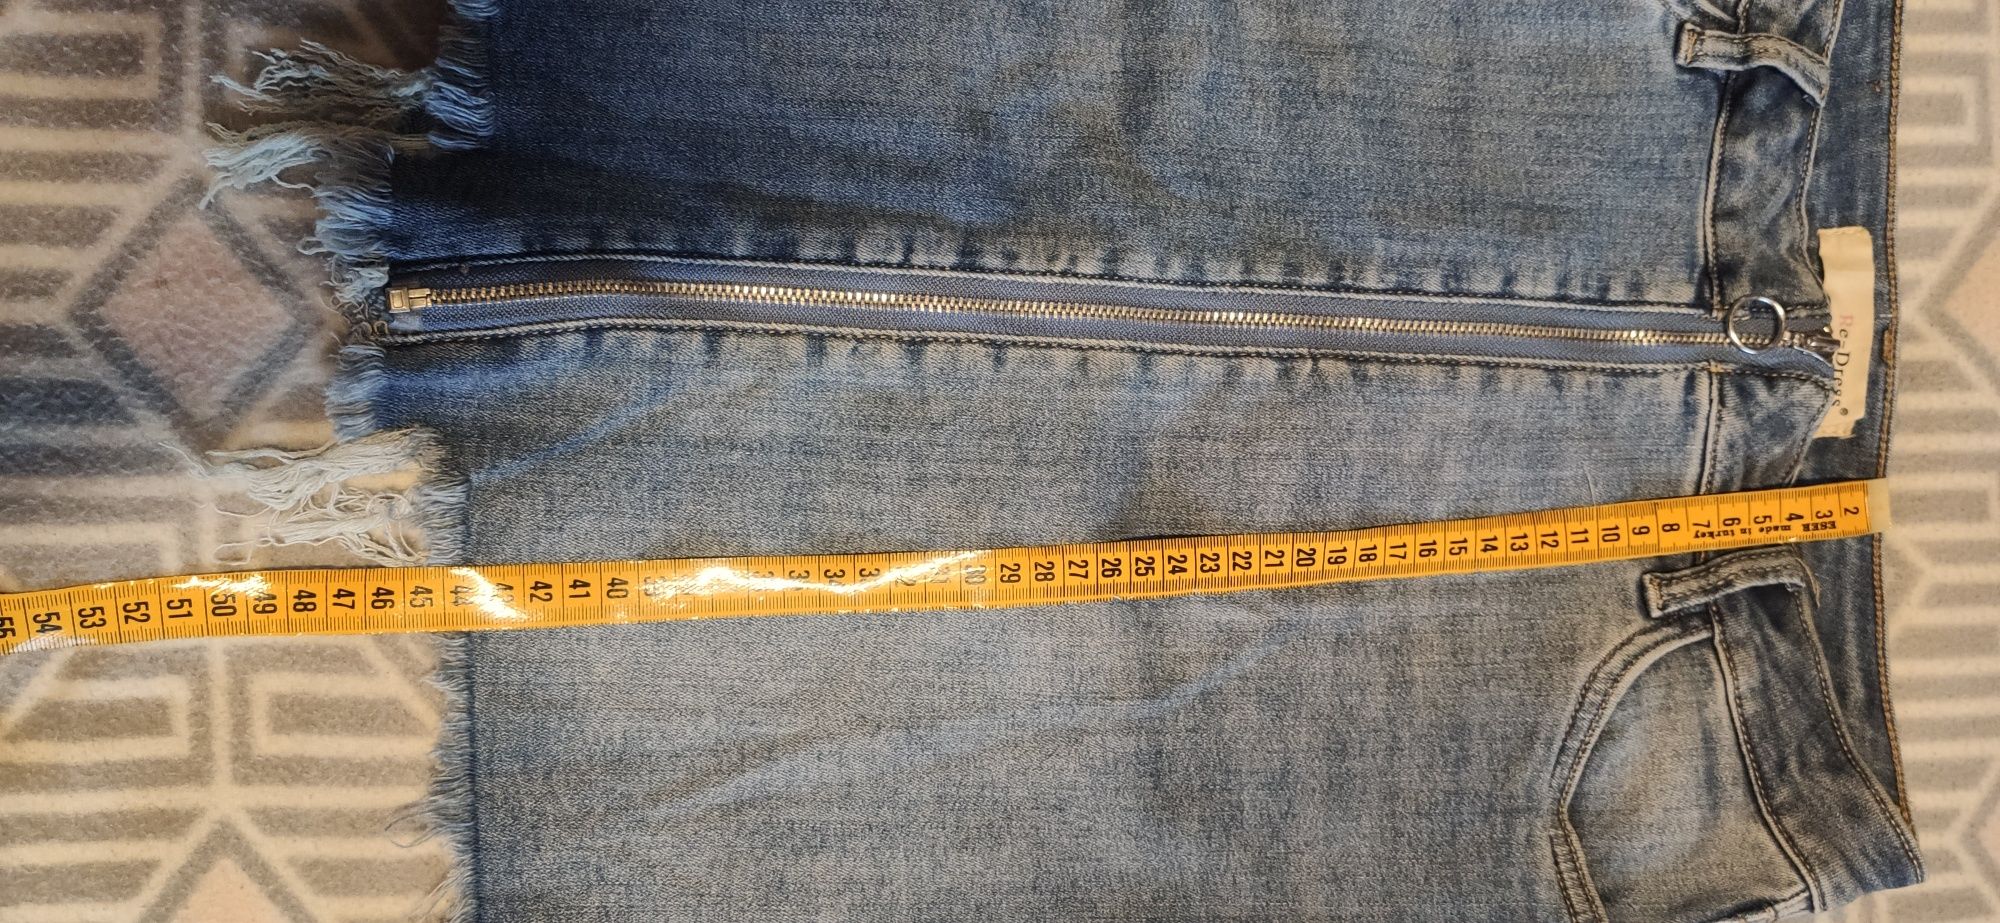 Jeansowa spódnica mini